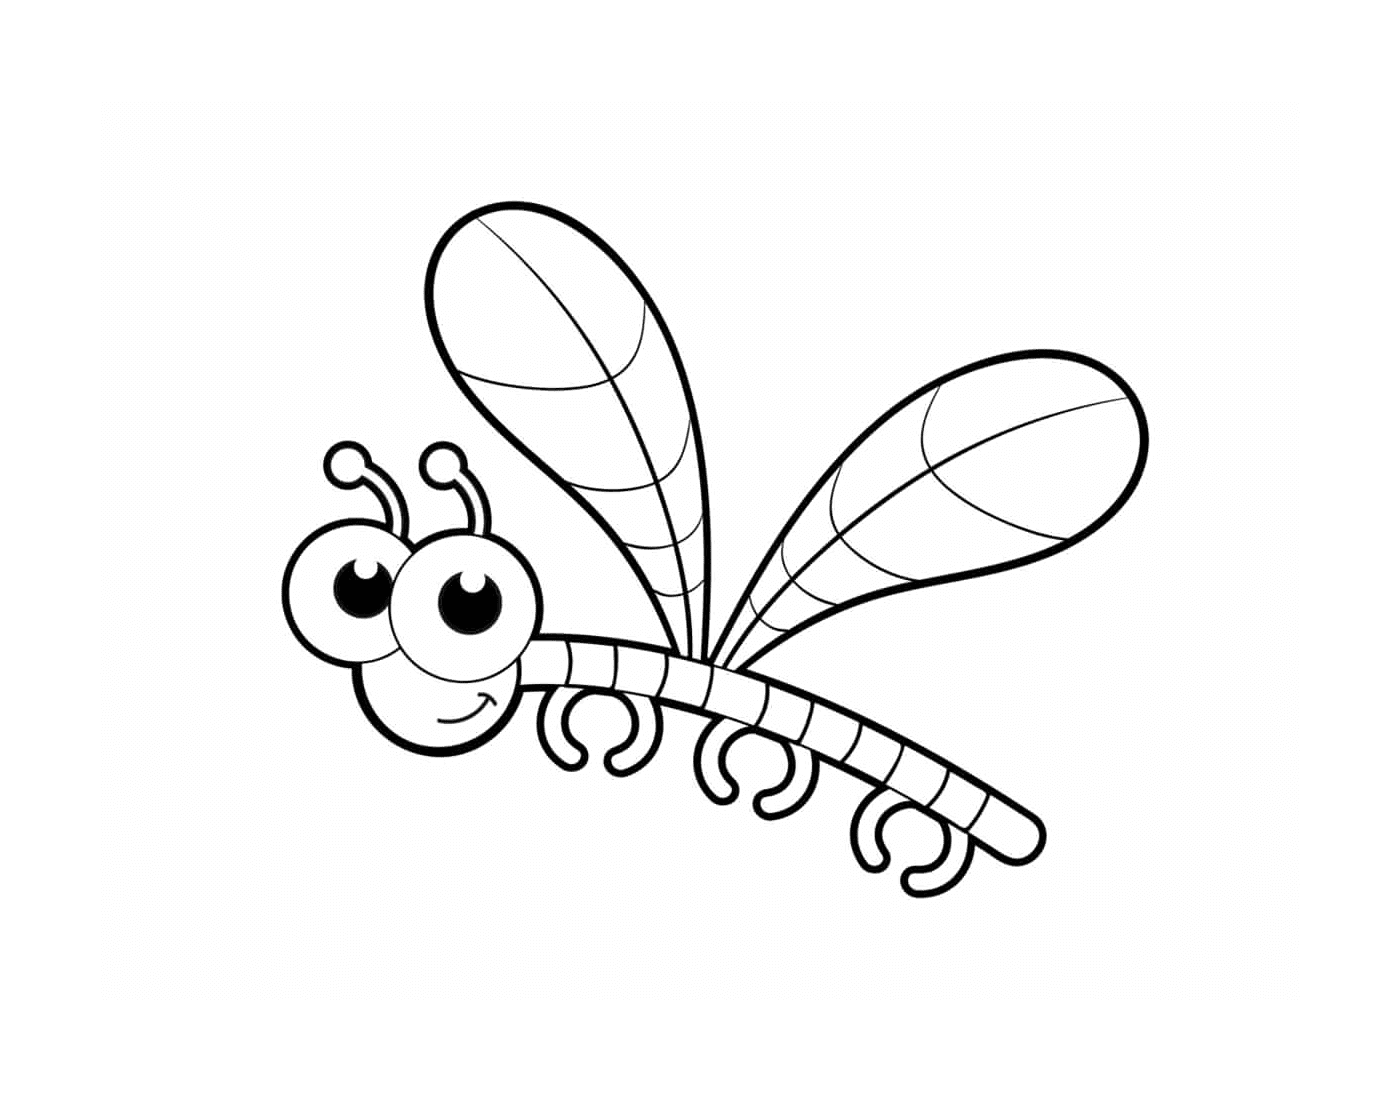  Adorable libélula con grandes ojos 